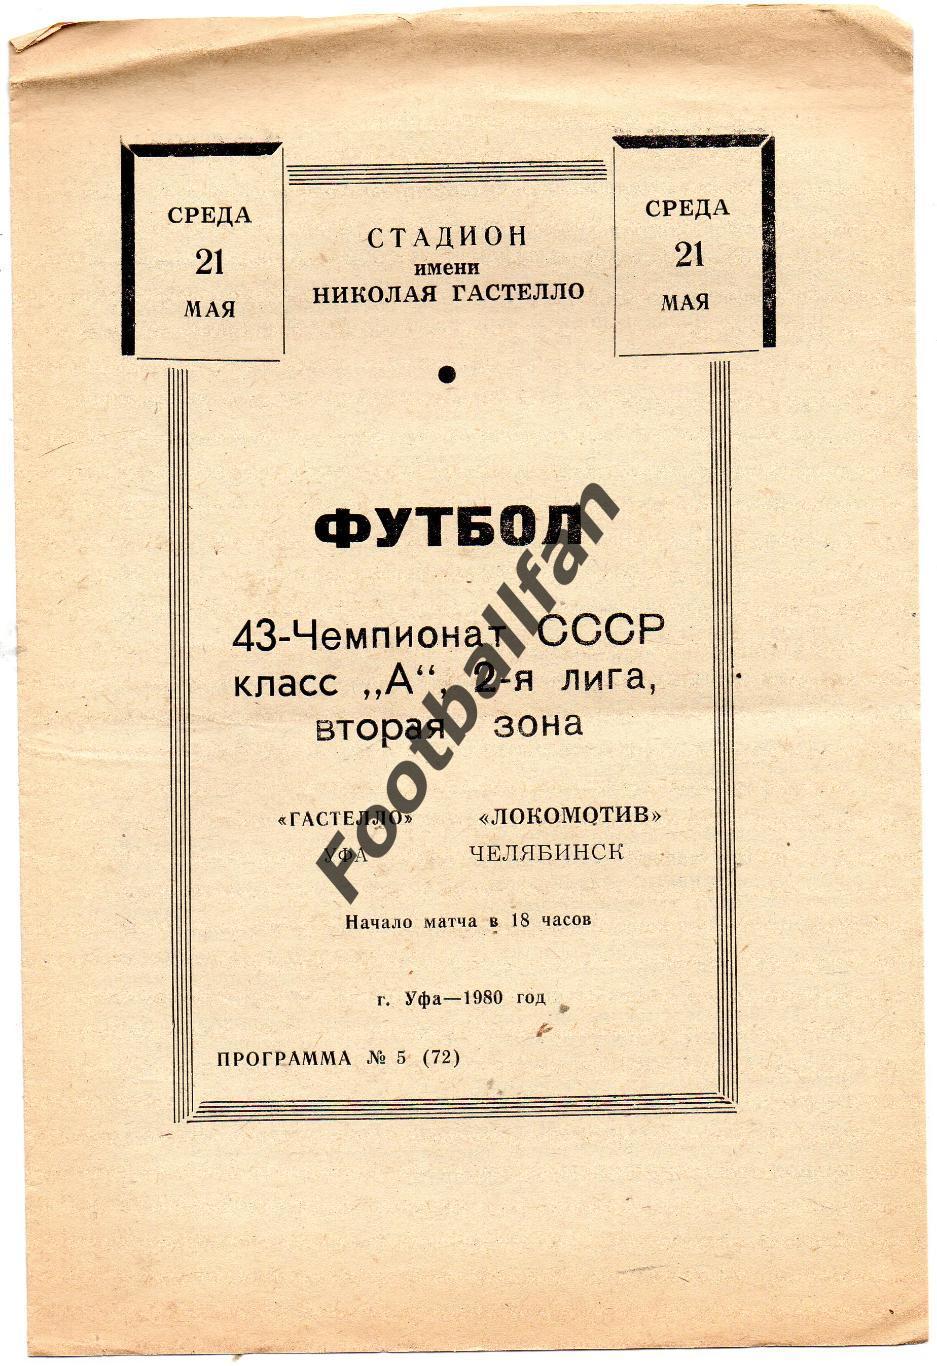 СК имени Н.Гастелло Уфа - Локомотив Челябинск 21.05.1980